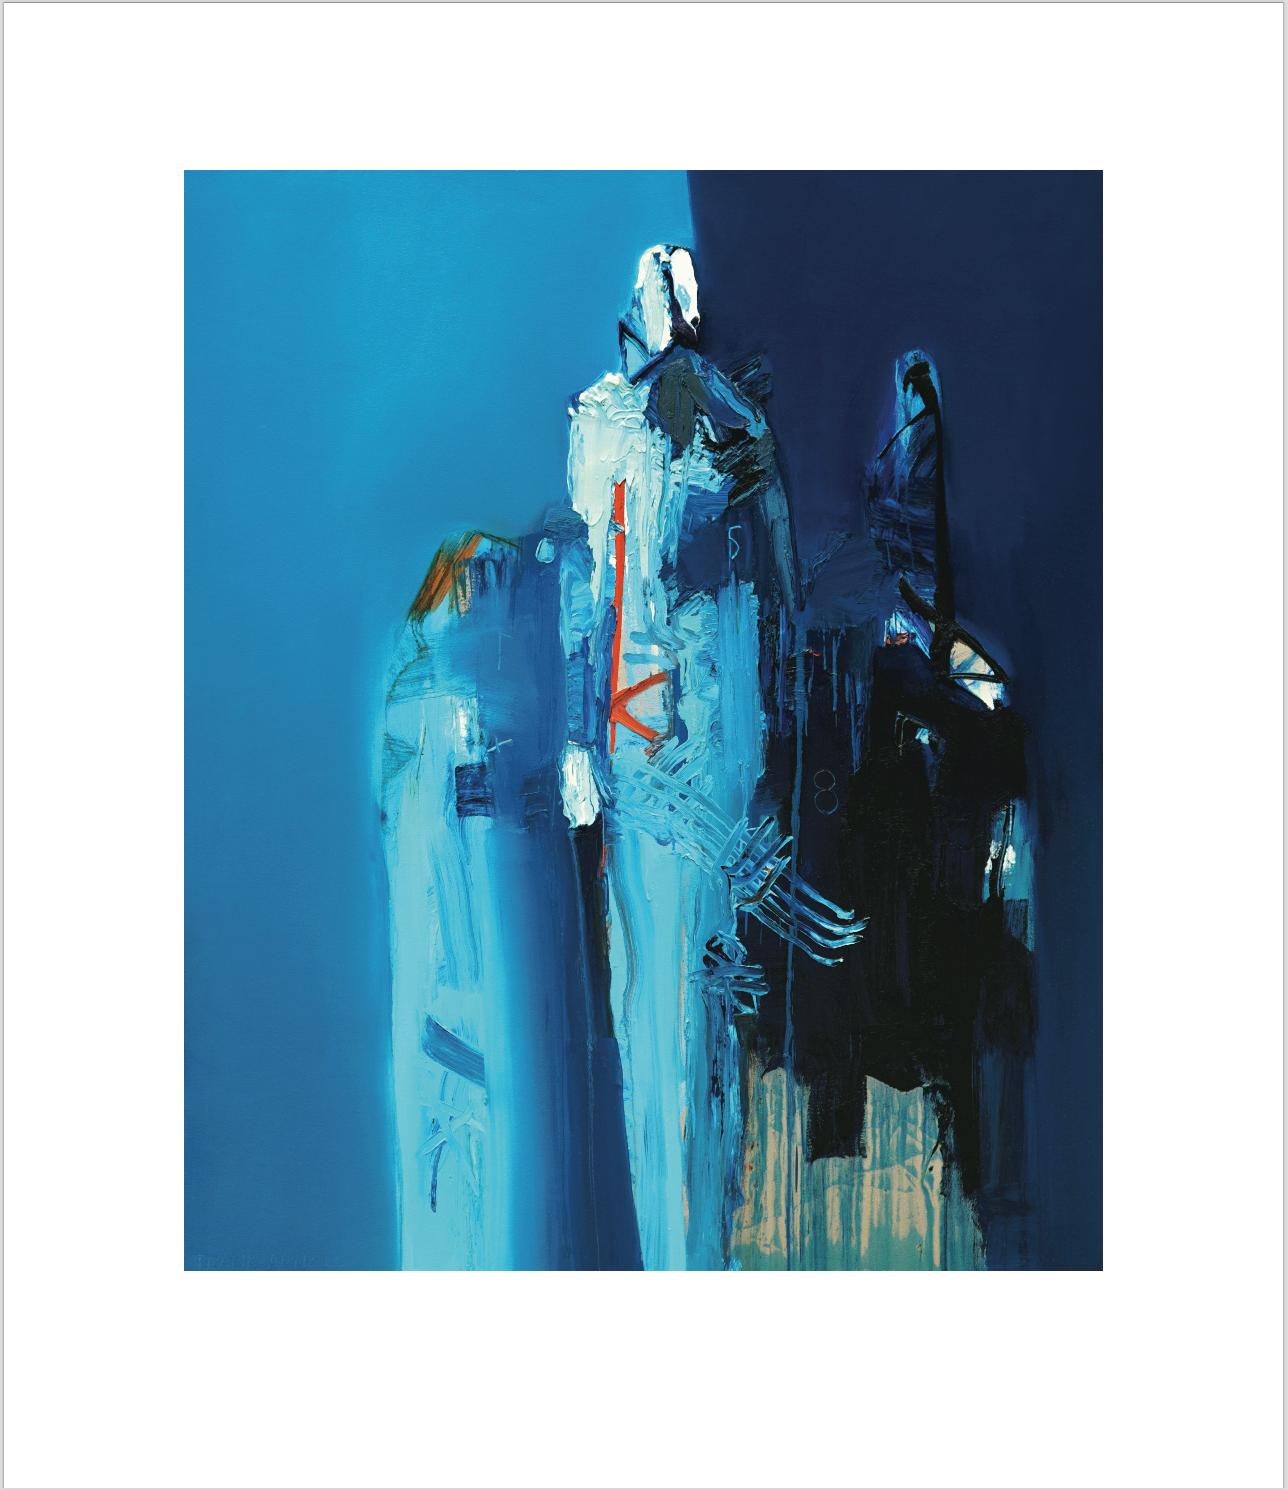 Druck auf Leinwand von „Azul Paseo“, Auflage von 58 Stück, Frank Arnold 1